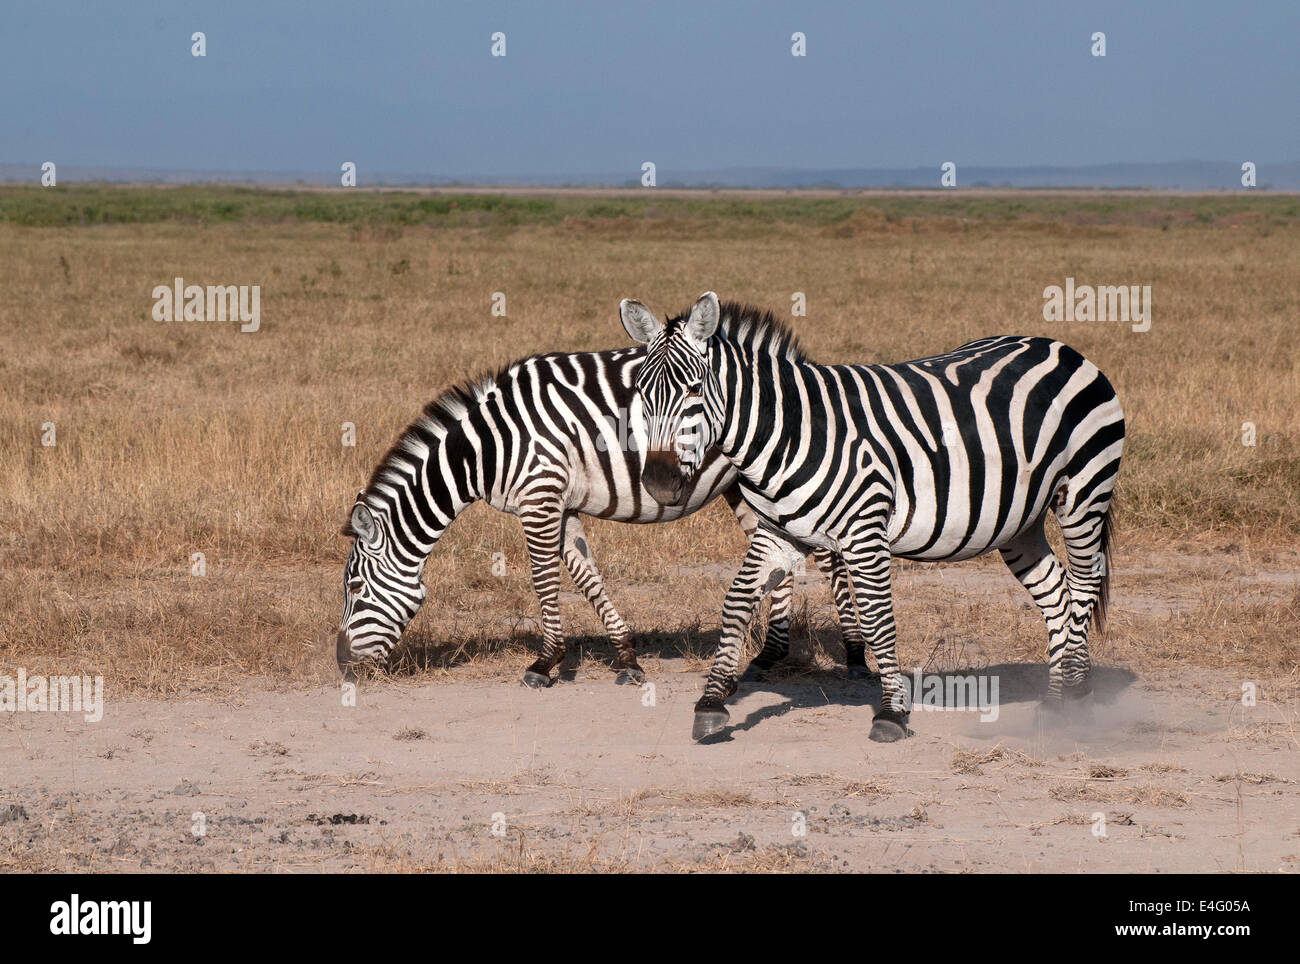 Deux zèbres commun dans le Parc national Amboseli Kenya Afrique de l'Est DEUX ZÈBRES ZÈBRES KENYA AMBOSELI Banque D'Images